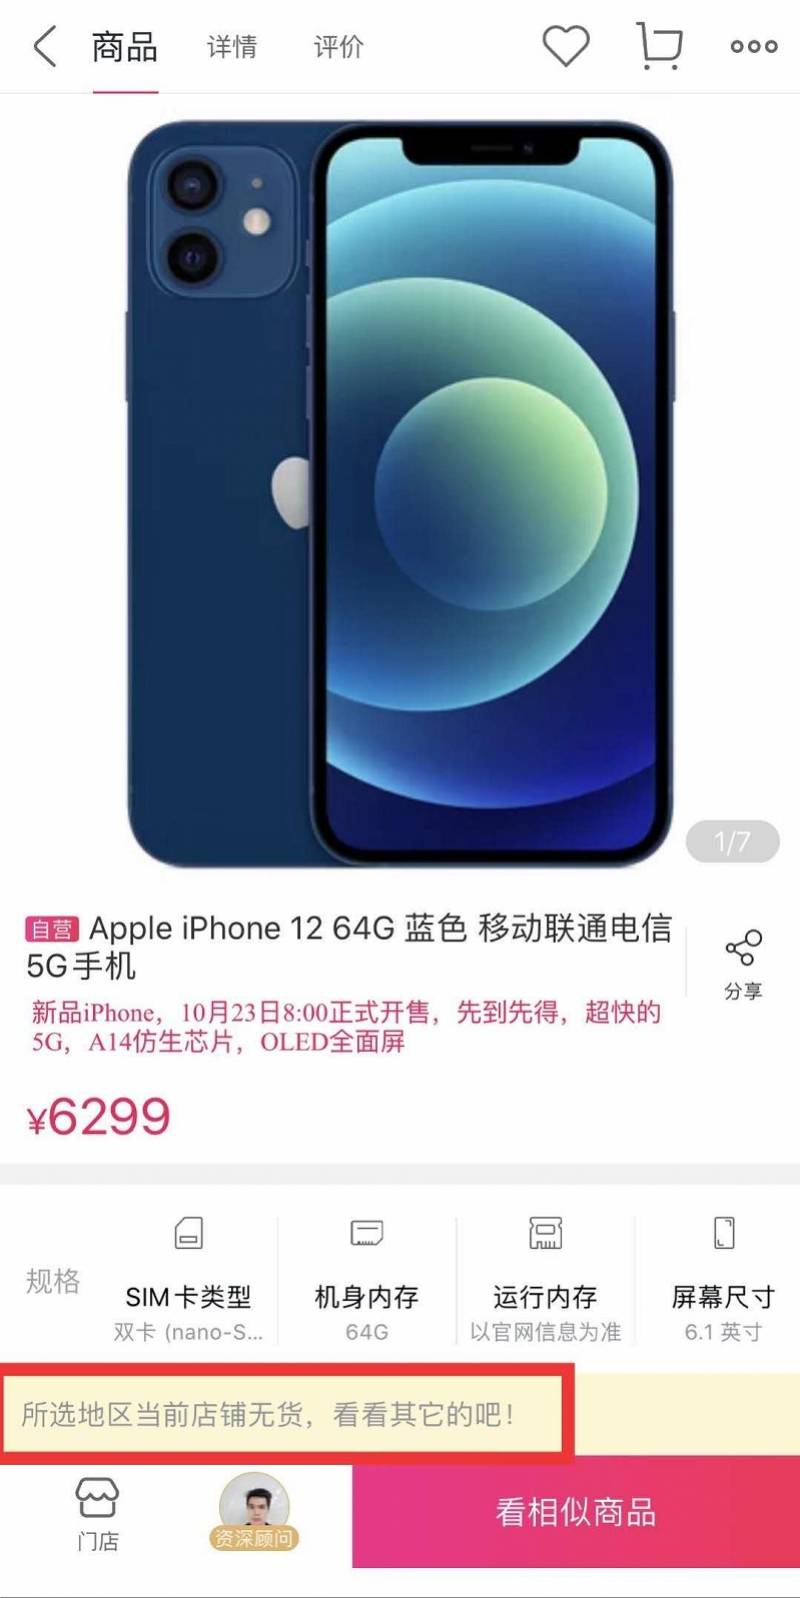 iphone12今日发售,蓝色最受追捧!有黄牛加价2千元_pro